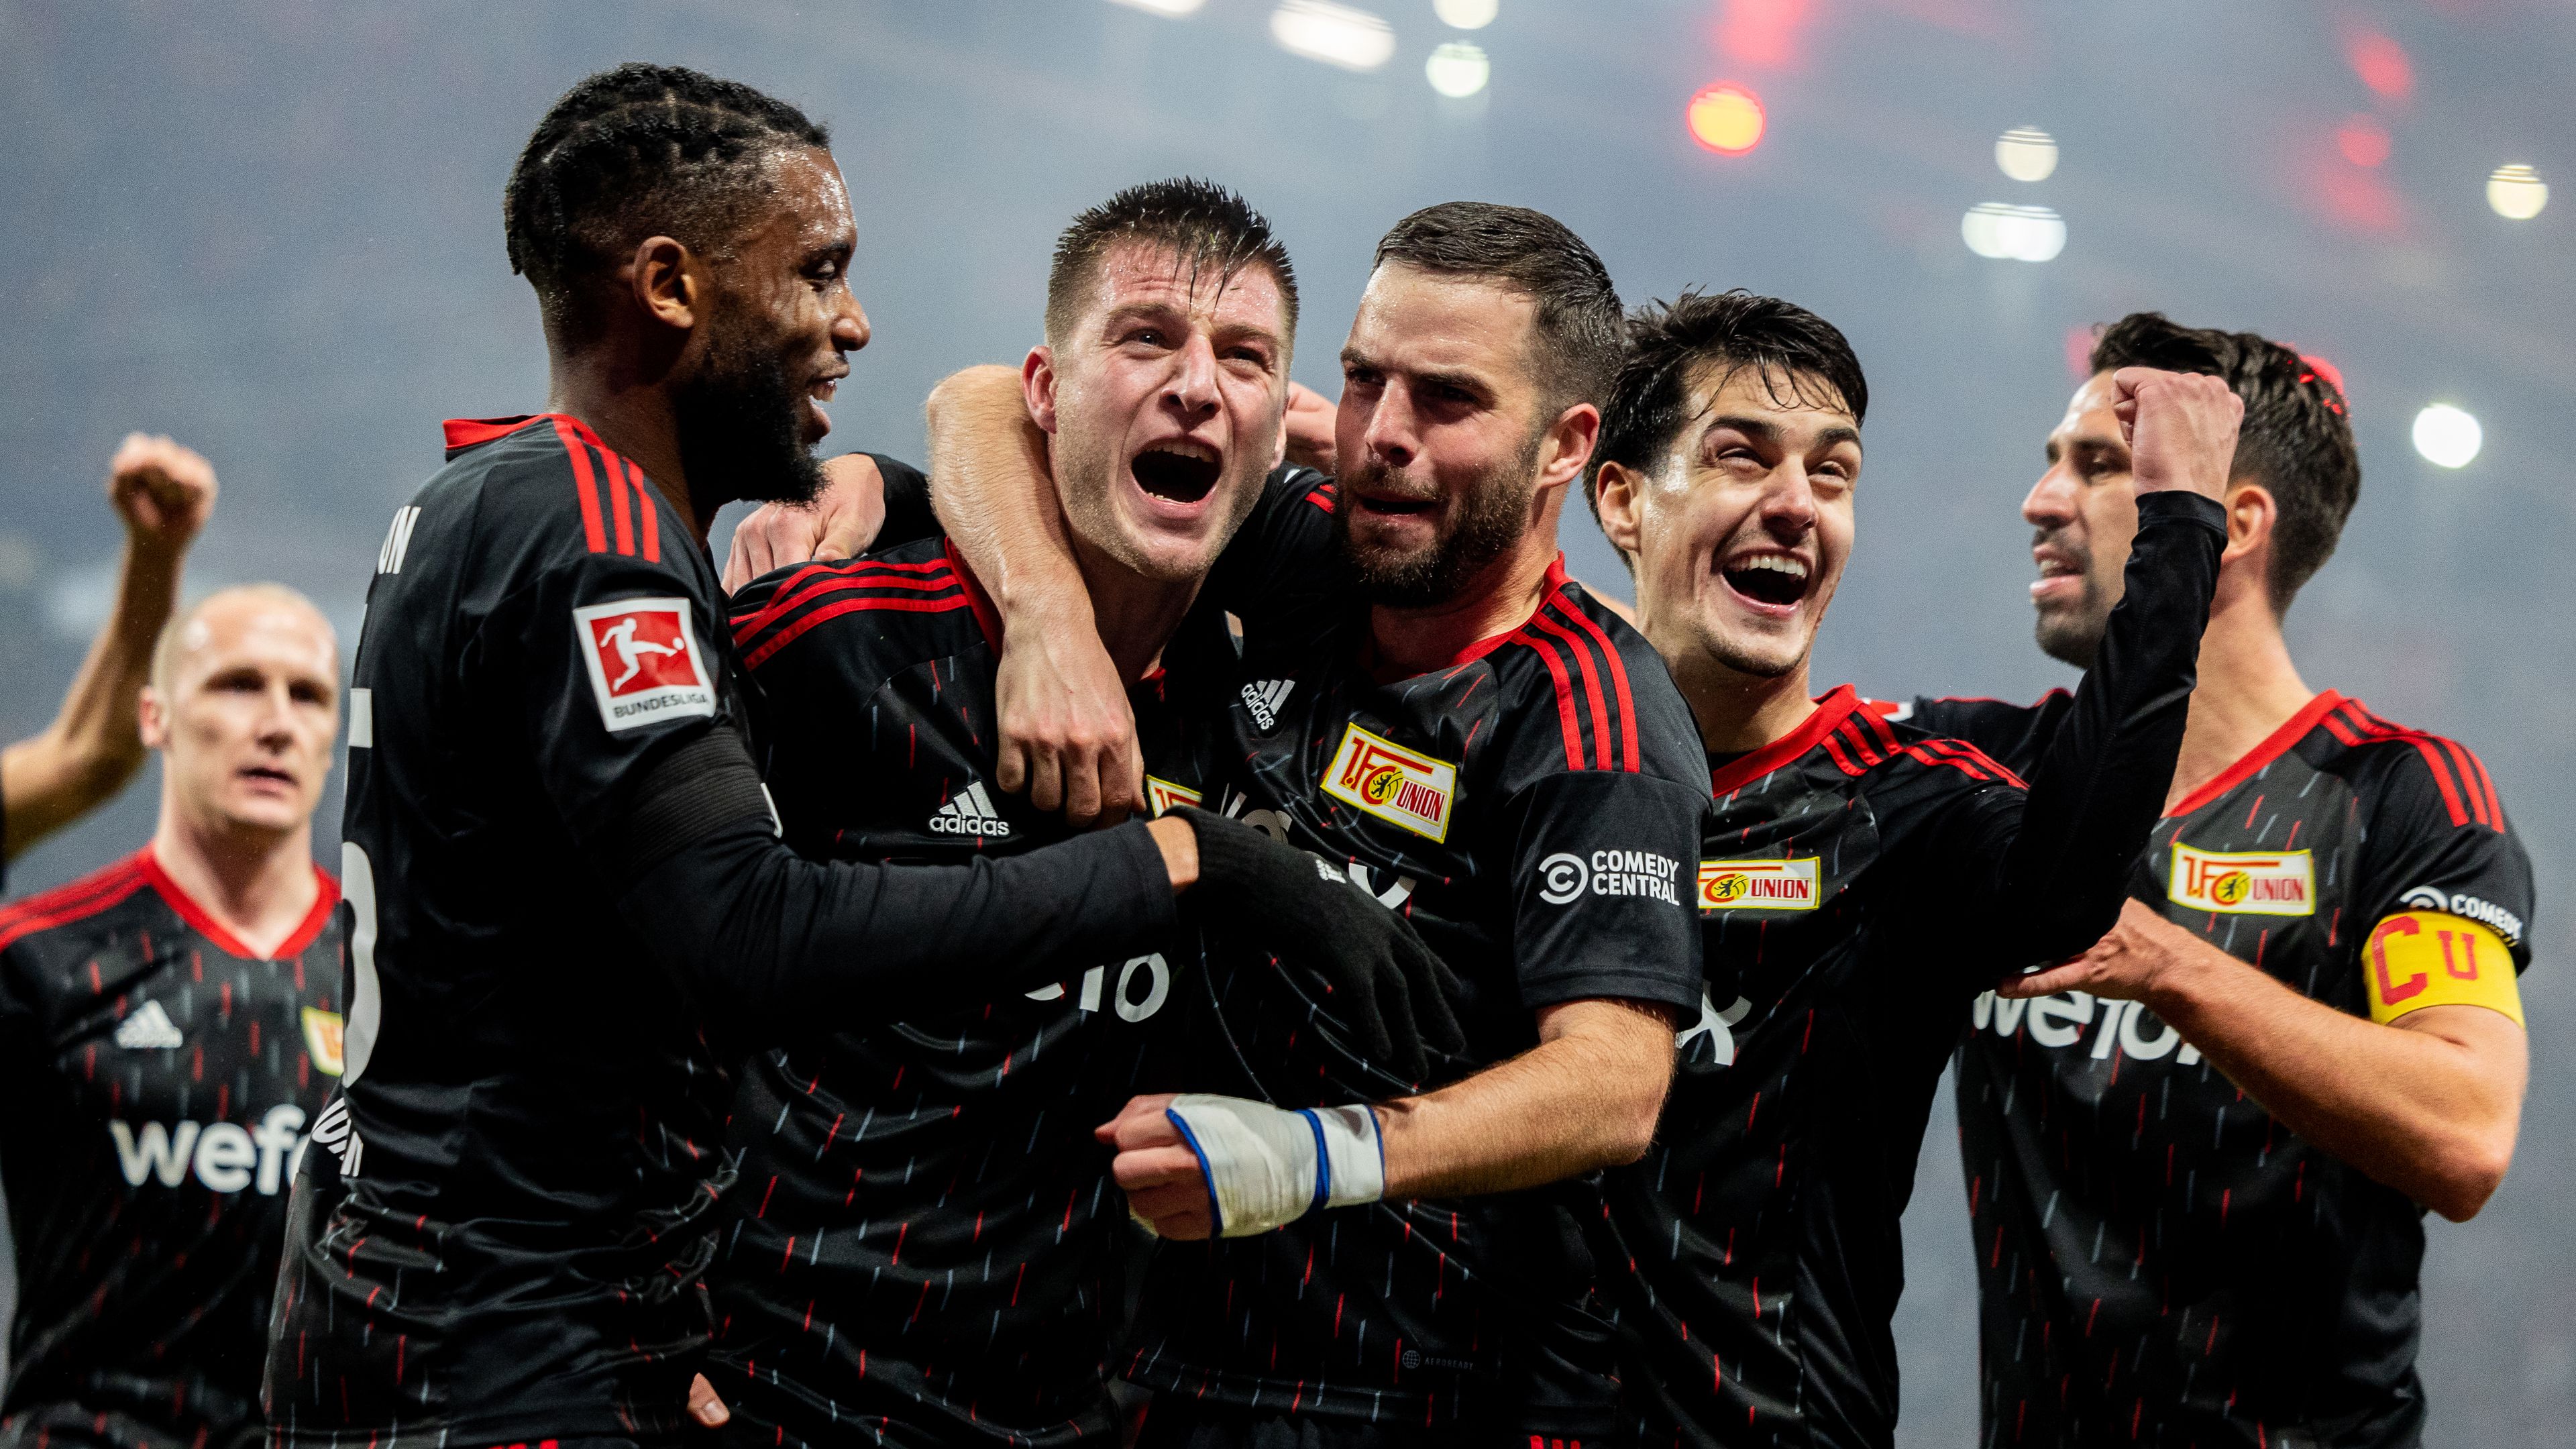 Laidouniék hátrányból győzték le Szoboszlaiékat a Bundesliga-rangadón